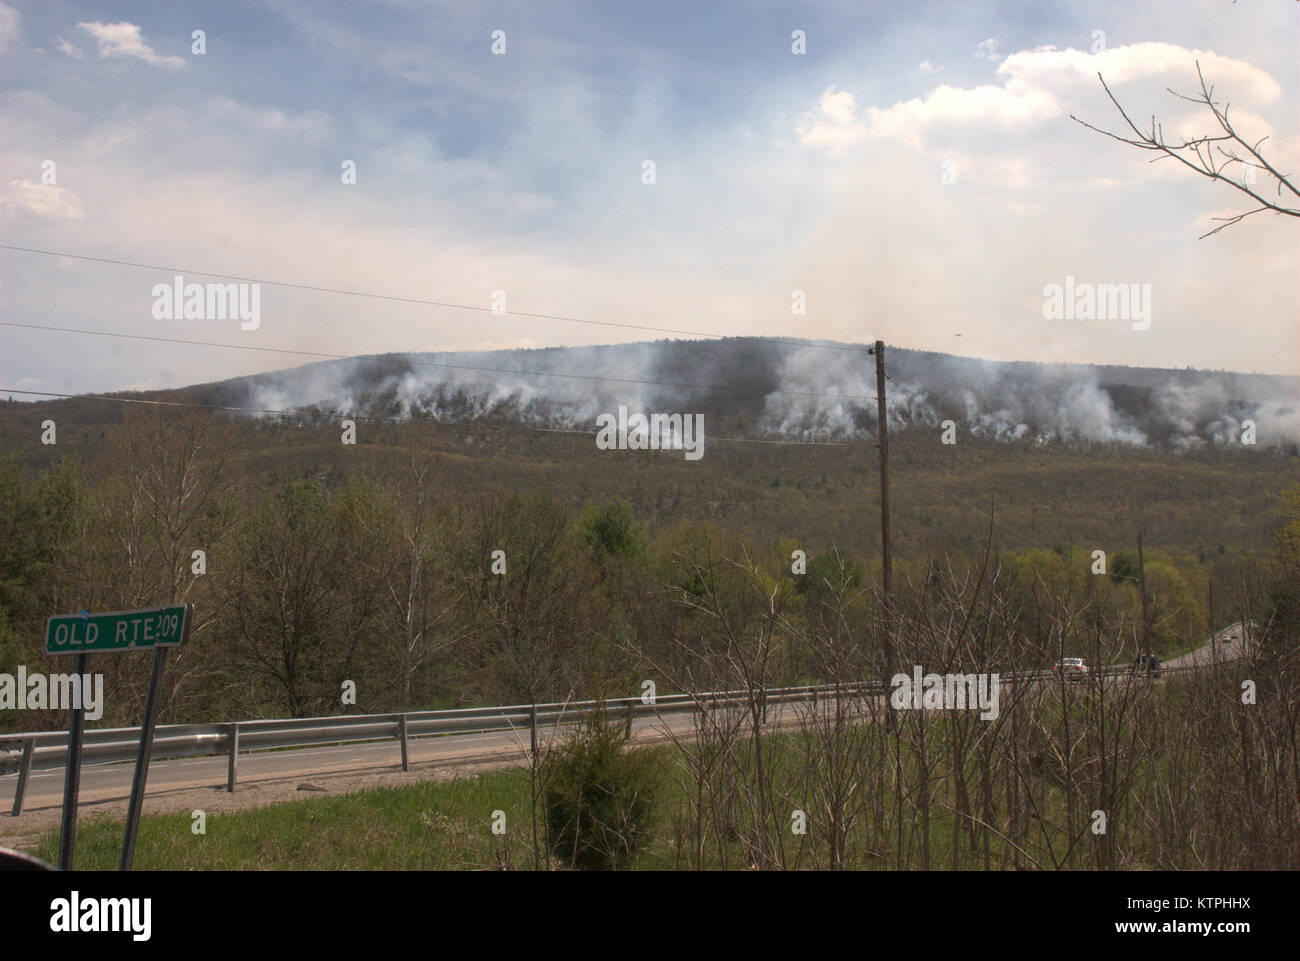 Die Bürste das Feuer auf die Shawangunk Ridge gesehen wird am Morgen des 5. Mai südöstlich von Ellenville, NY US Army National Guard Foto von COL Richard Goldenberg/freigegeben. Stockfoto